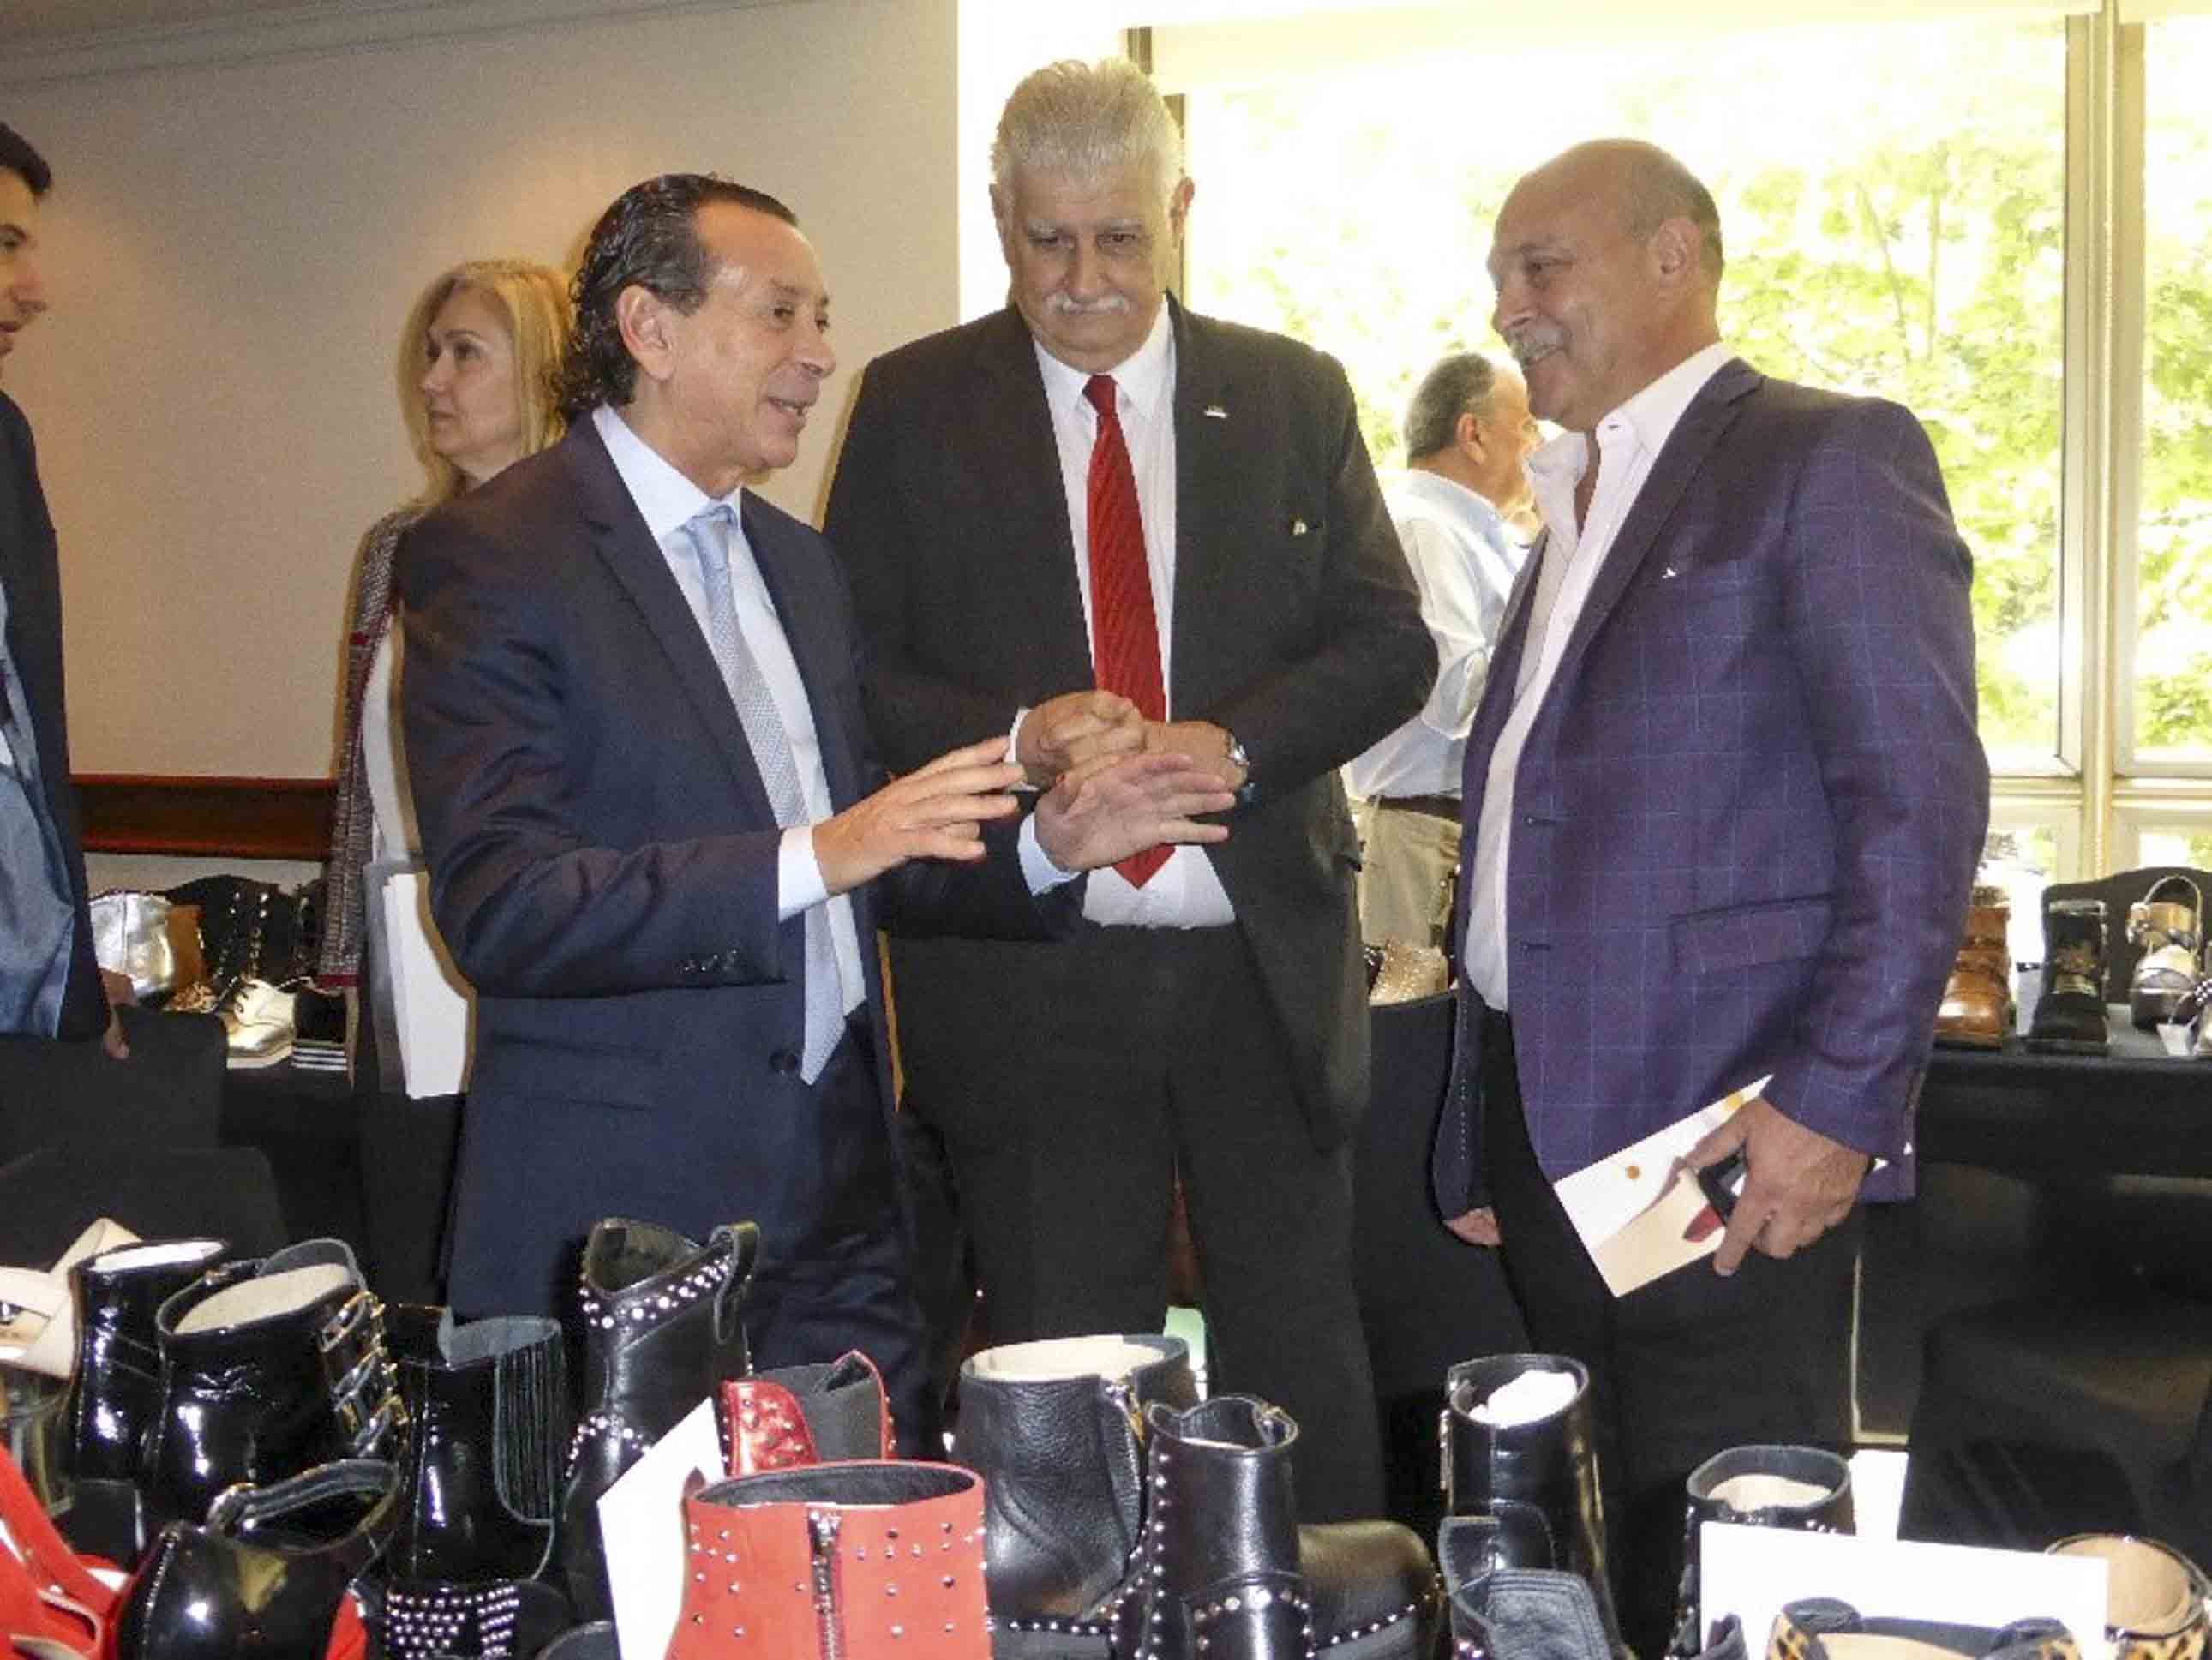 De izq. a derecha: Ing. Alejandro Wagner (AAICI), Embajador José Octavio Bordón, Ministro Dante Sica, Sr. Alberto Sellaro (CIC), Sr. Félix Halcartegaray (Fedeccal)